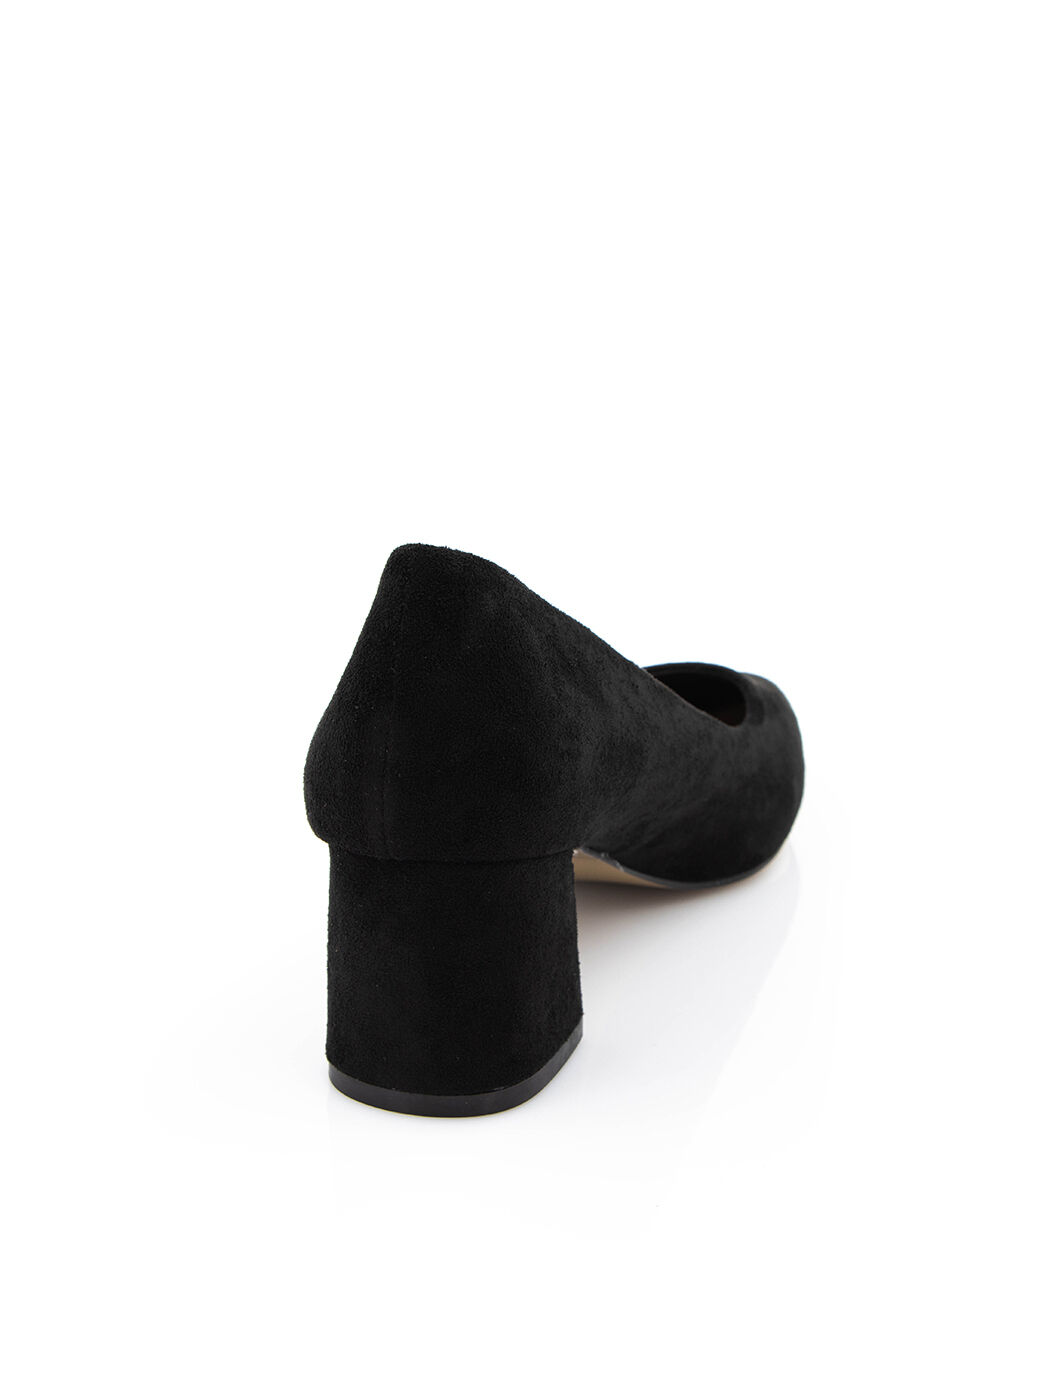 Туфли женские черные экозамша каблук устойчивый демисезон от производителя 8M вид 1